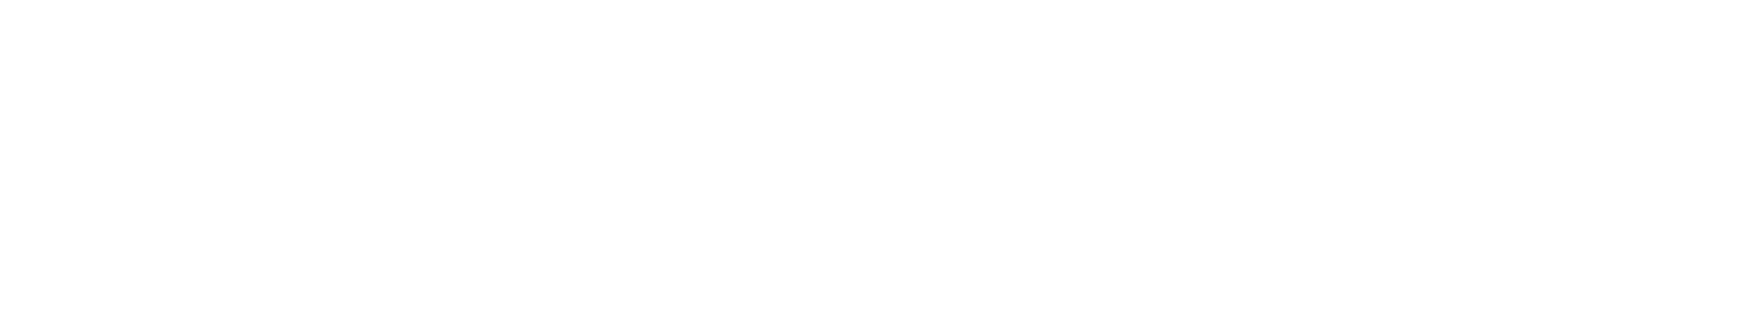 Praise Media™ logo